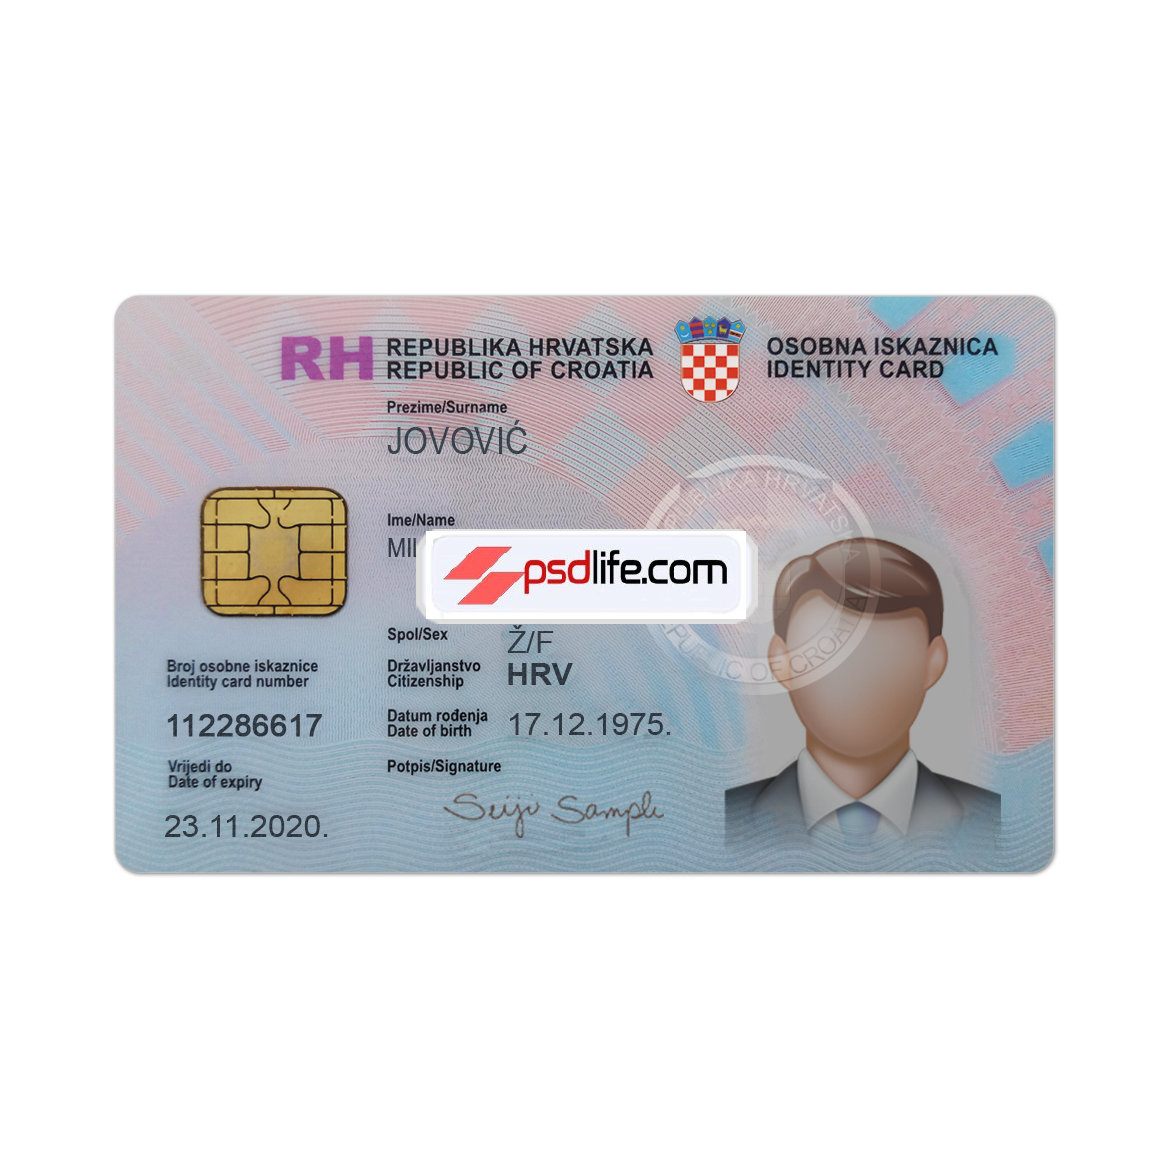 Croatia fake psd id card template editable / Predložak hrvatska lažne psd osobne iskaznice koji se može uređivati